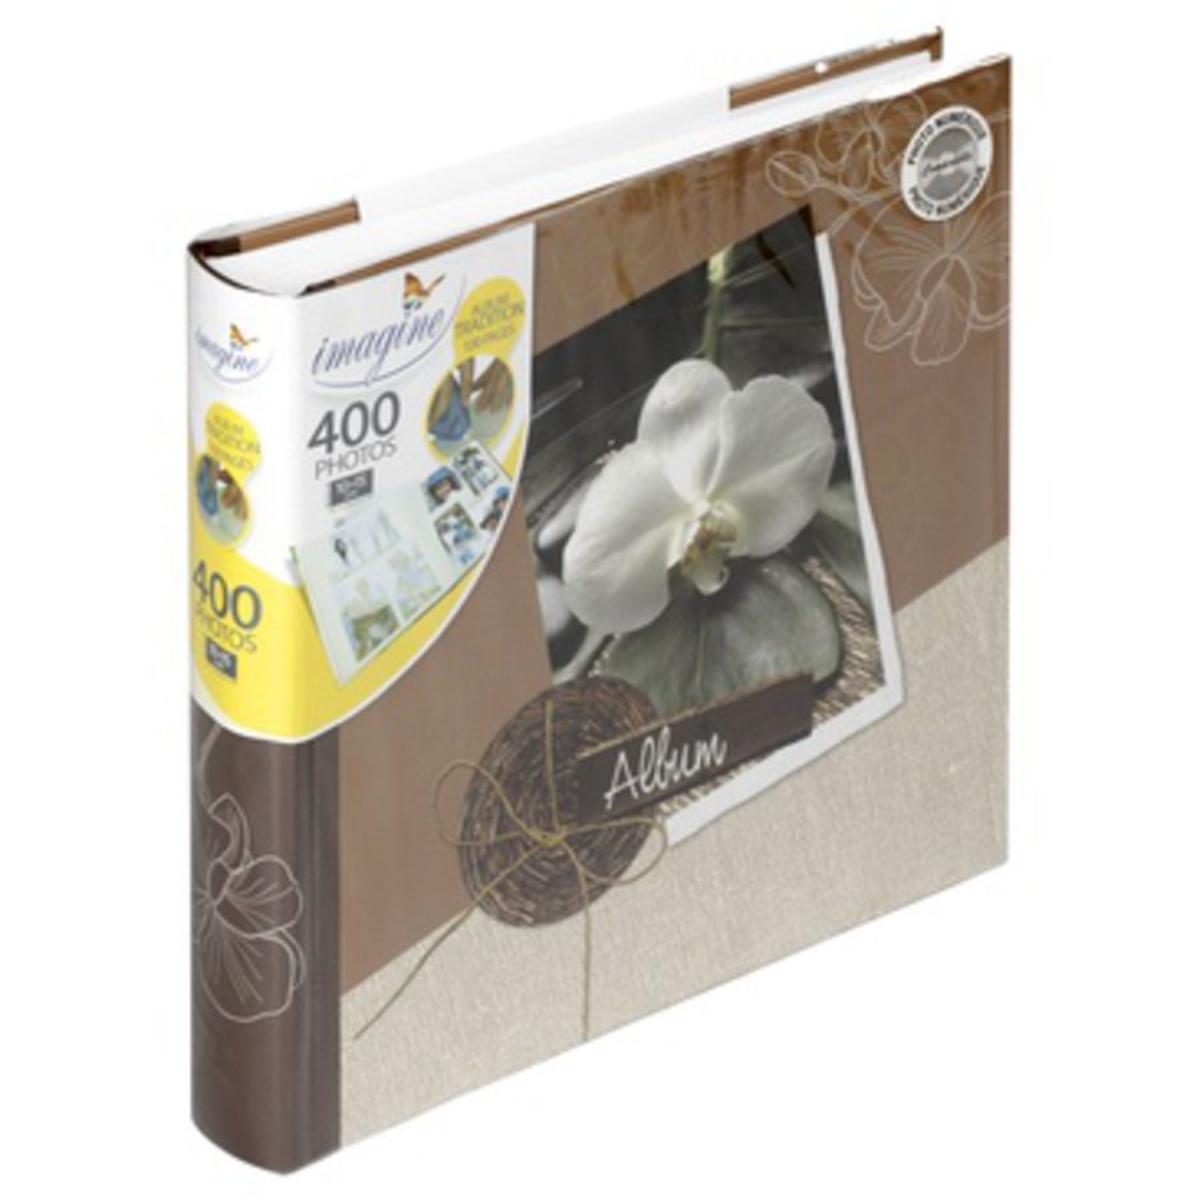 Album photo Flora - 30 x 30 cm - 100 pages - 400 photos -Couverture carton - Feuillets papier - Multicolore